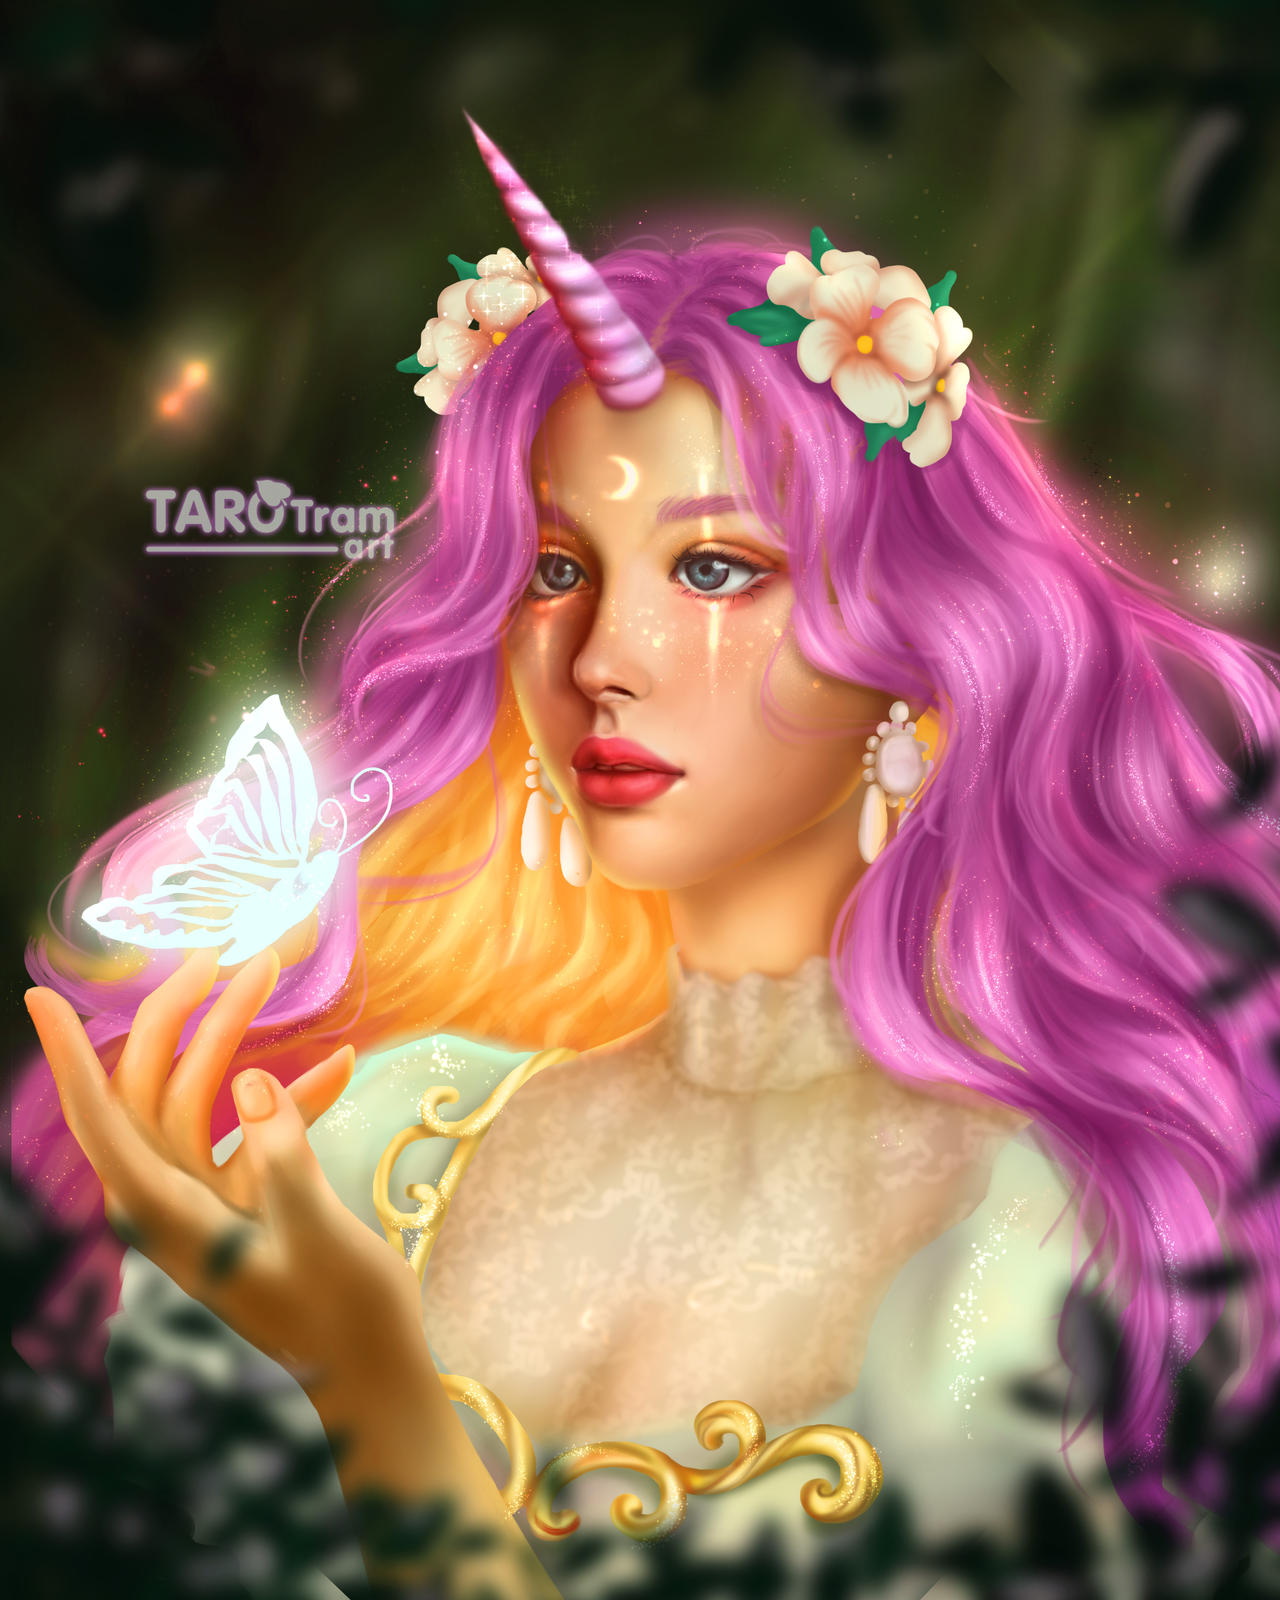 Фото Голубоглазая девушка-единорог, с длинными розовыми волосами, на пальцах сидит светящаяся бабочка, by TaroTram